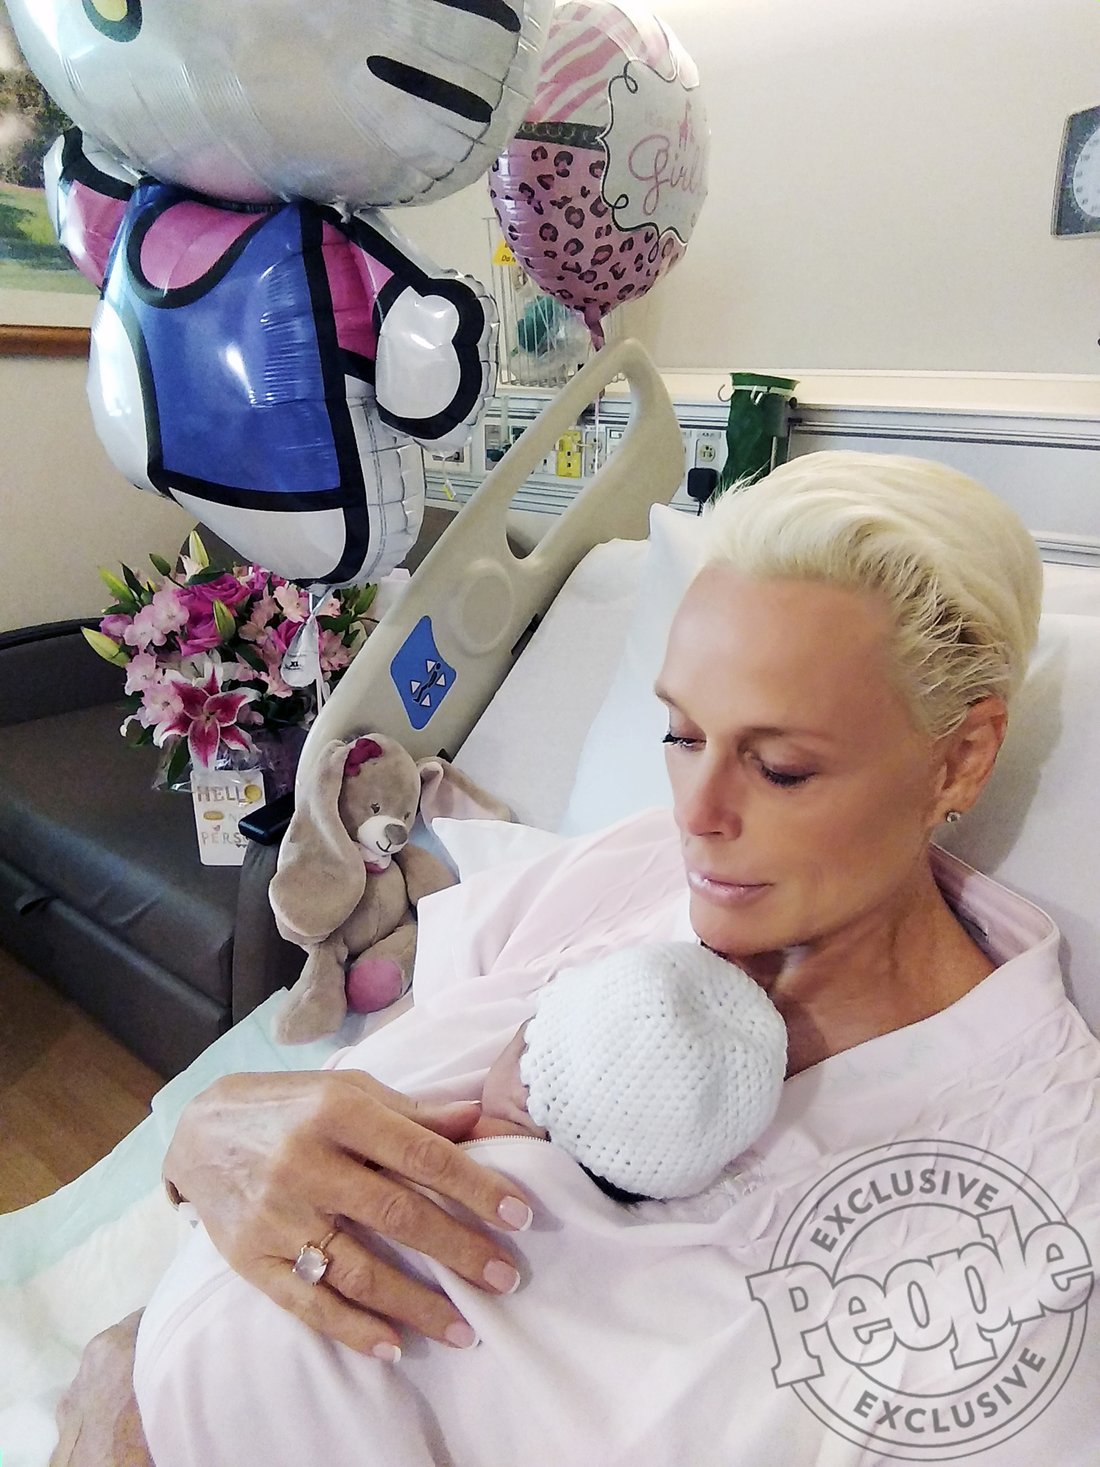 Brigitte Nielsen maman à 55 ans : elle dévoile un tendre cliché de son bébé